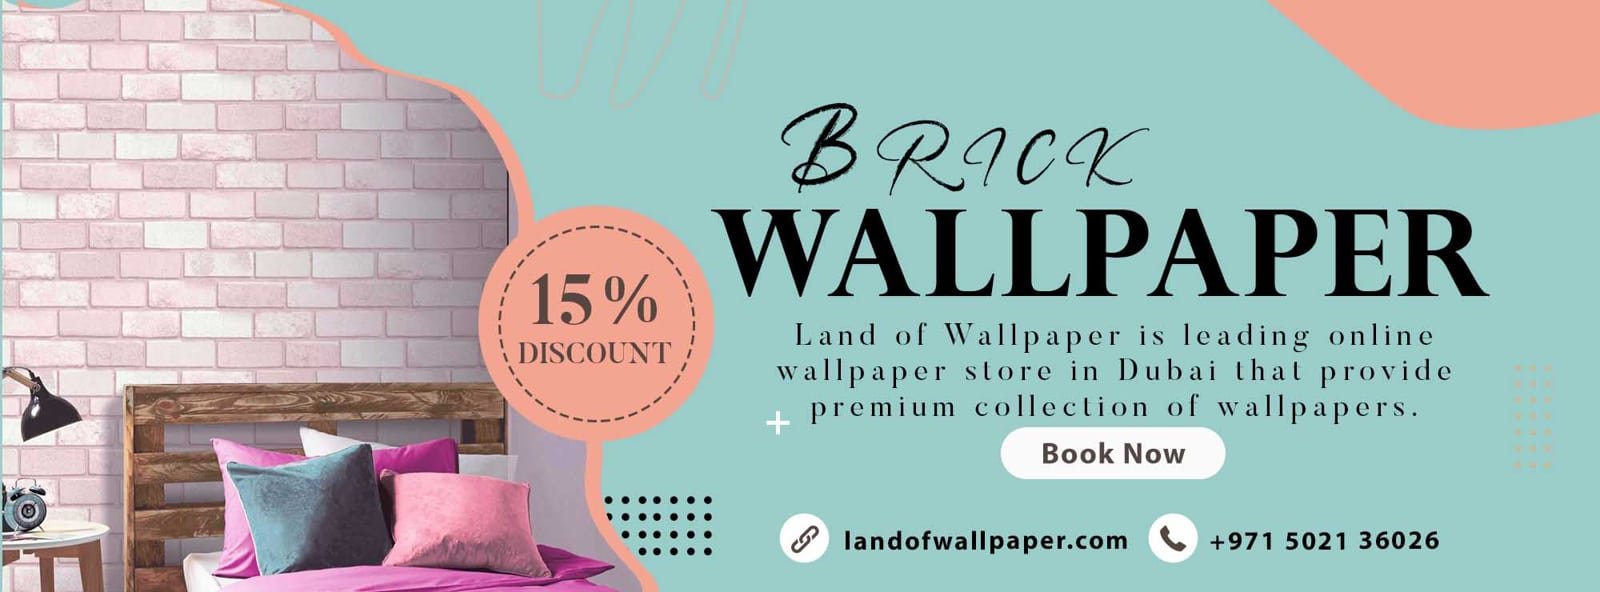 Brick Wallpaper Supplier in Dubai